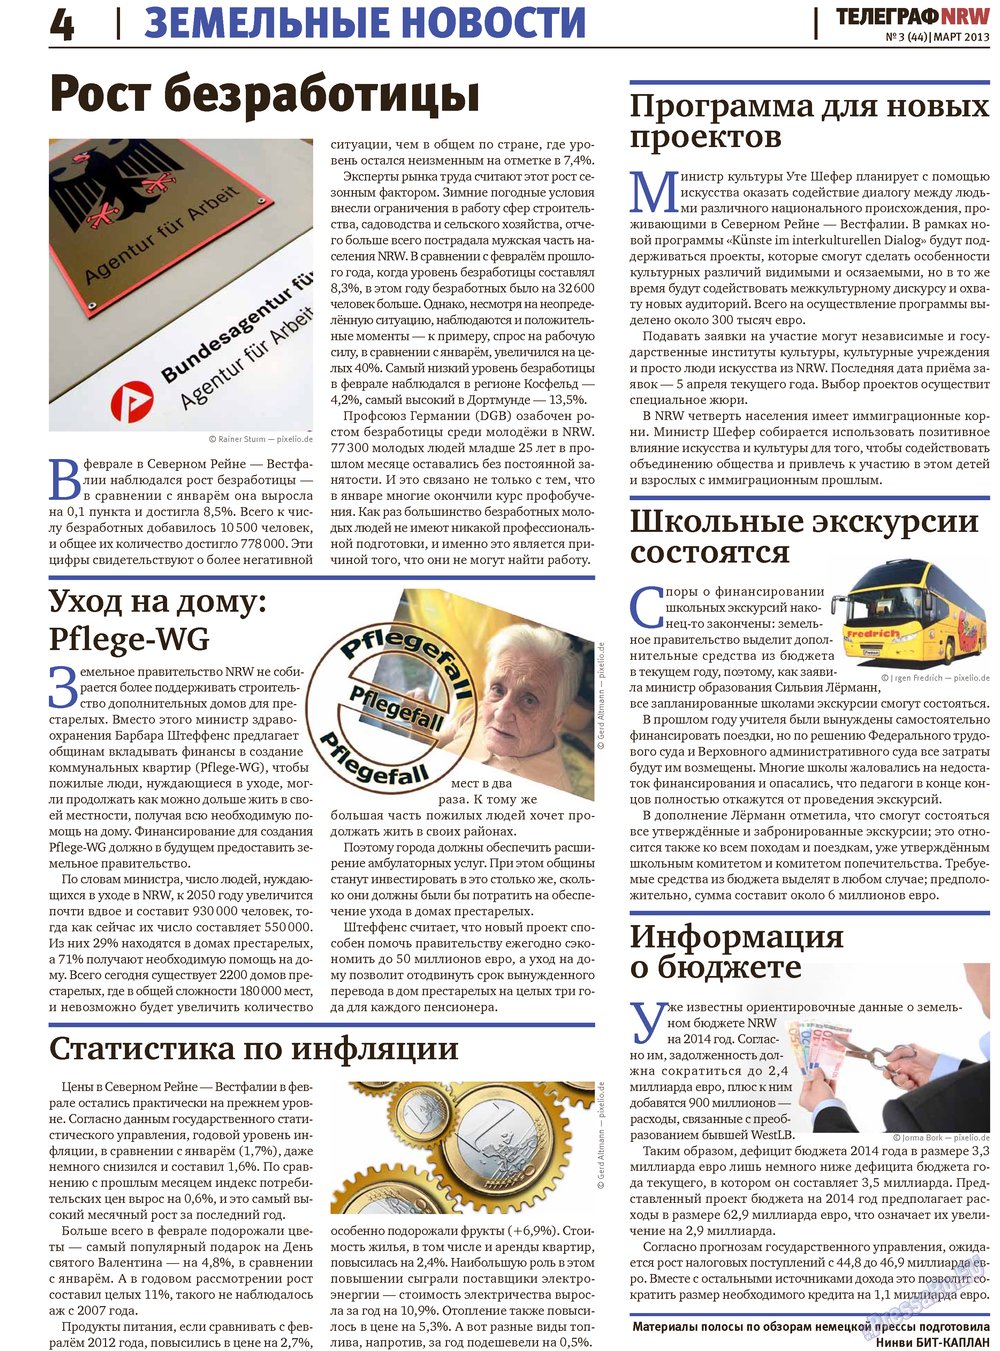 Телеграф NRW (газета). 2013 год, номер 3, стр. 4